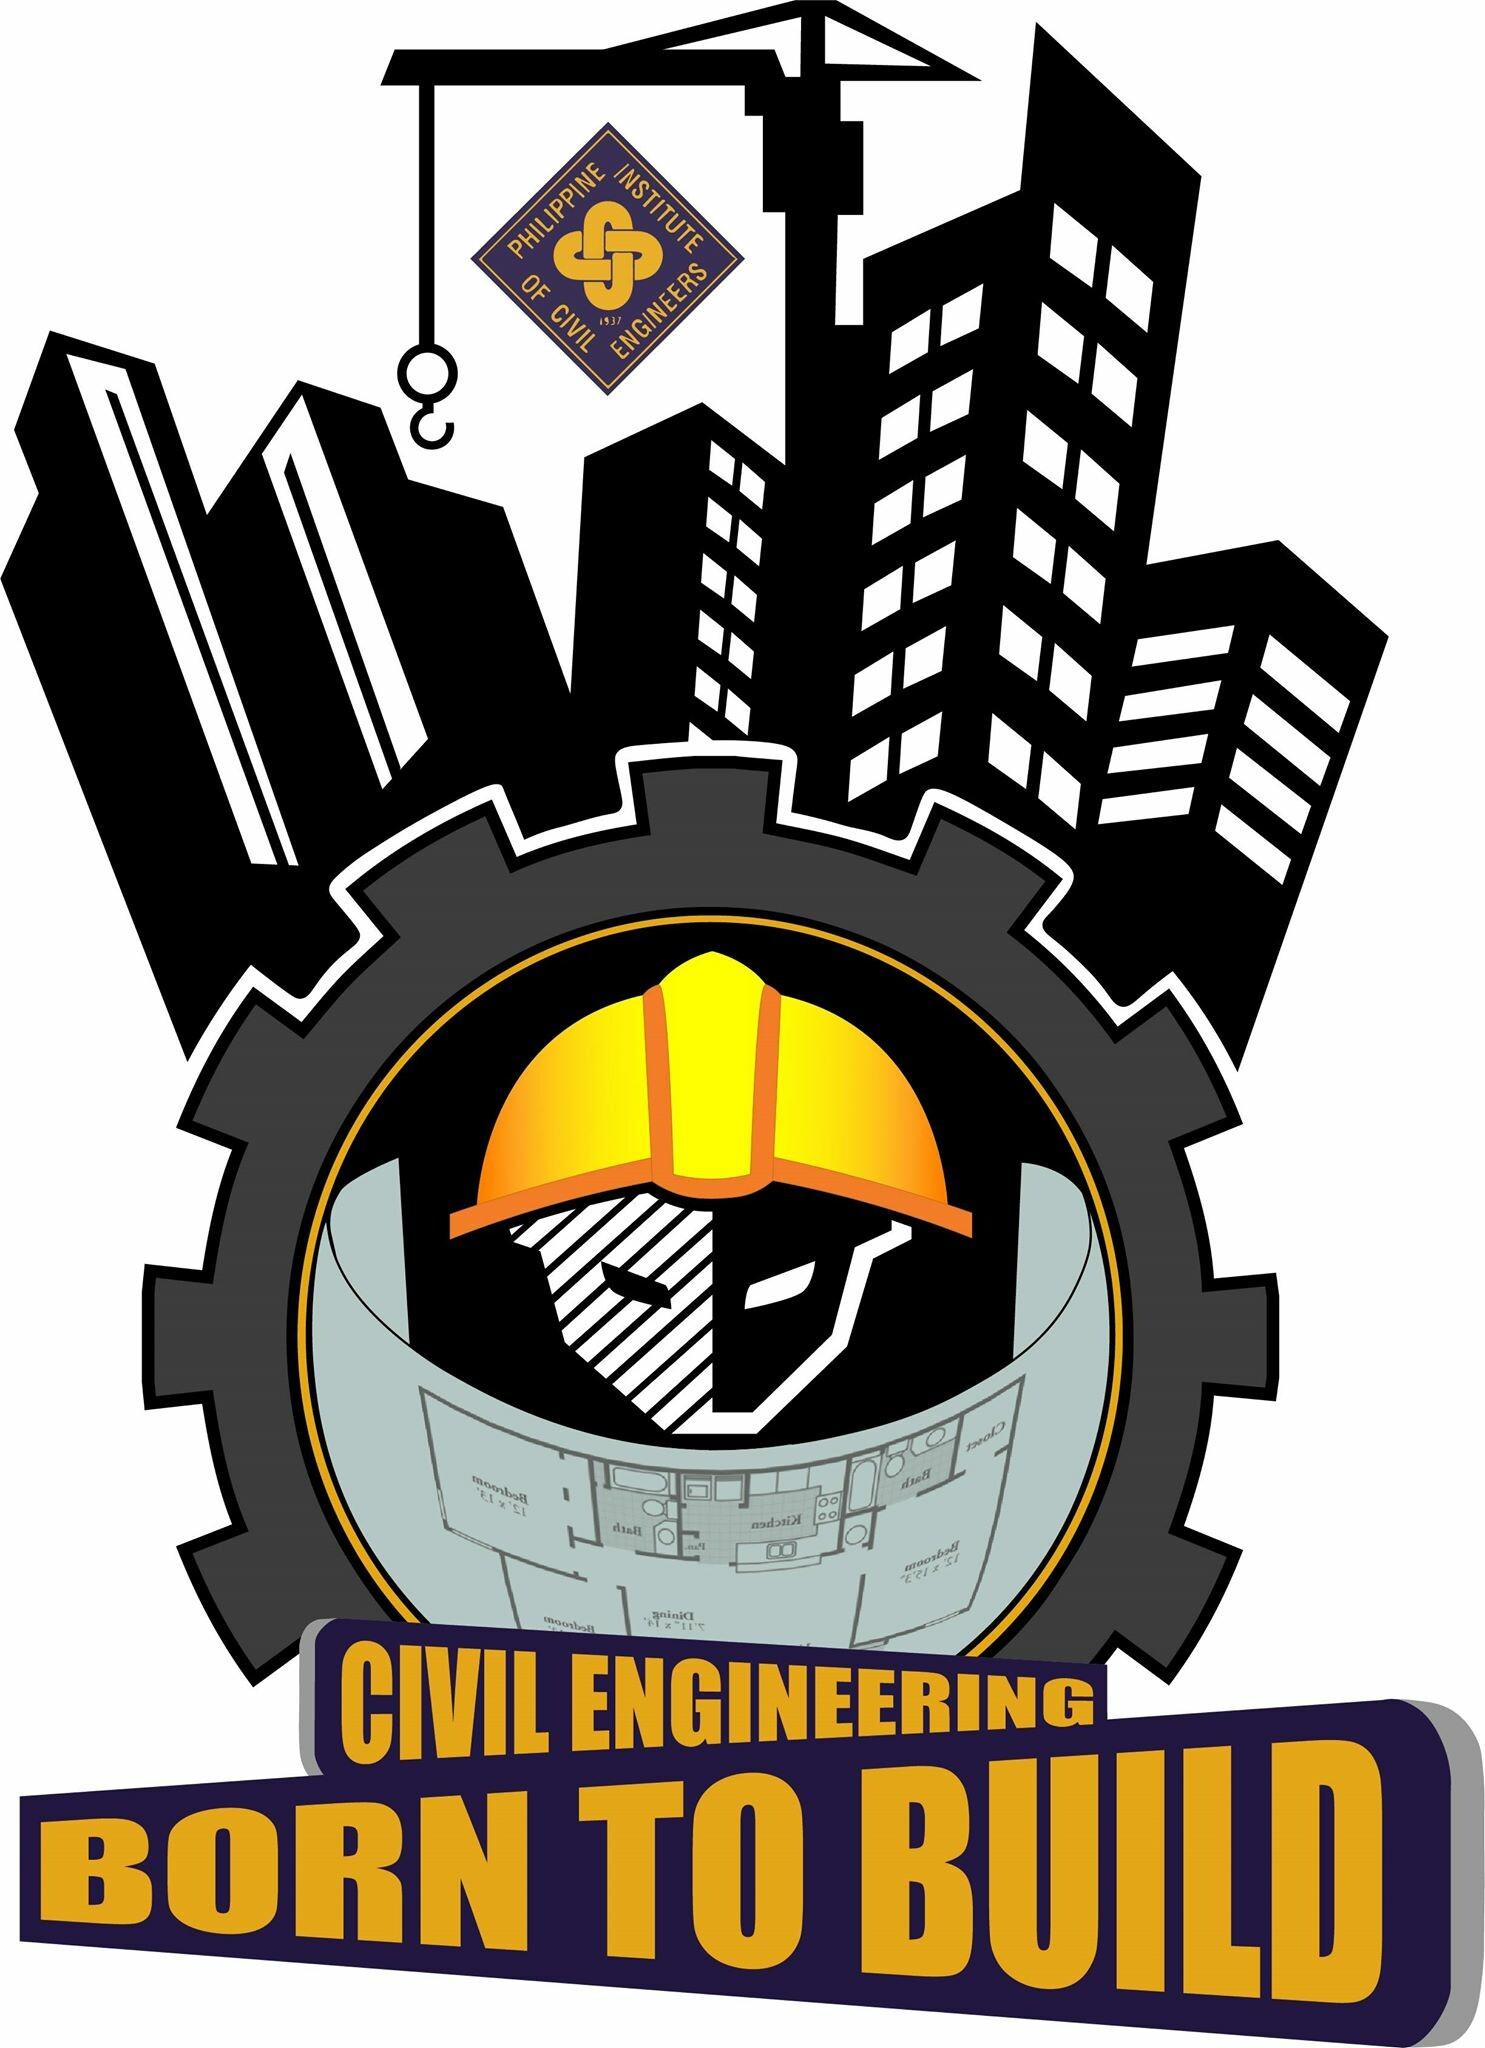 Best Civil Engineering Logos